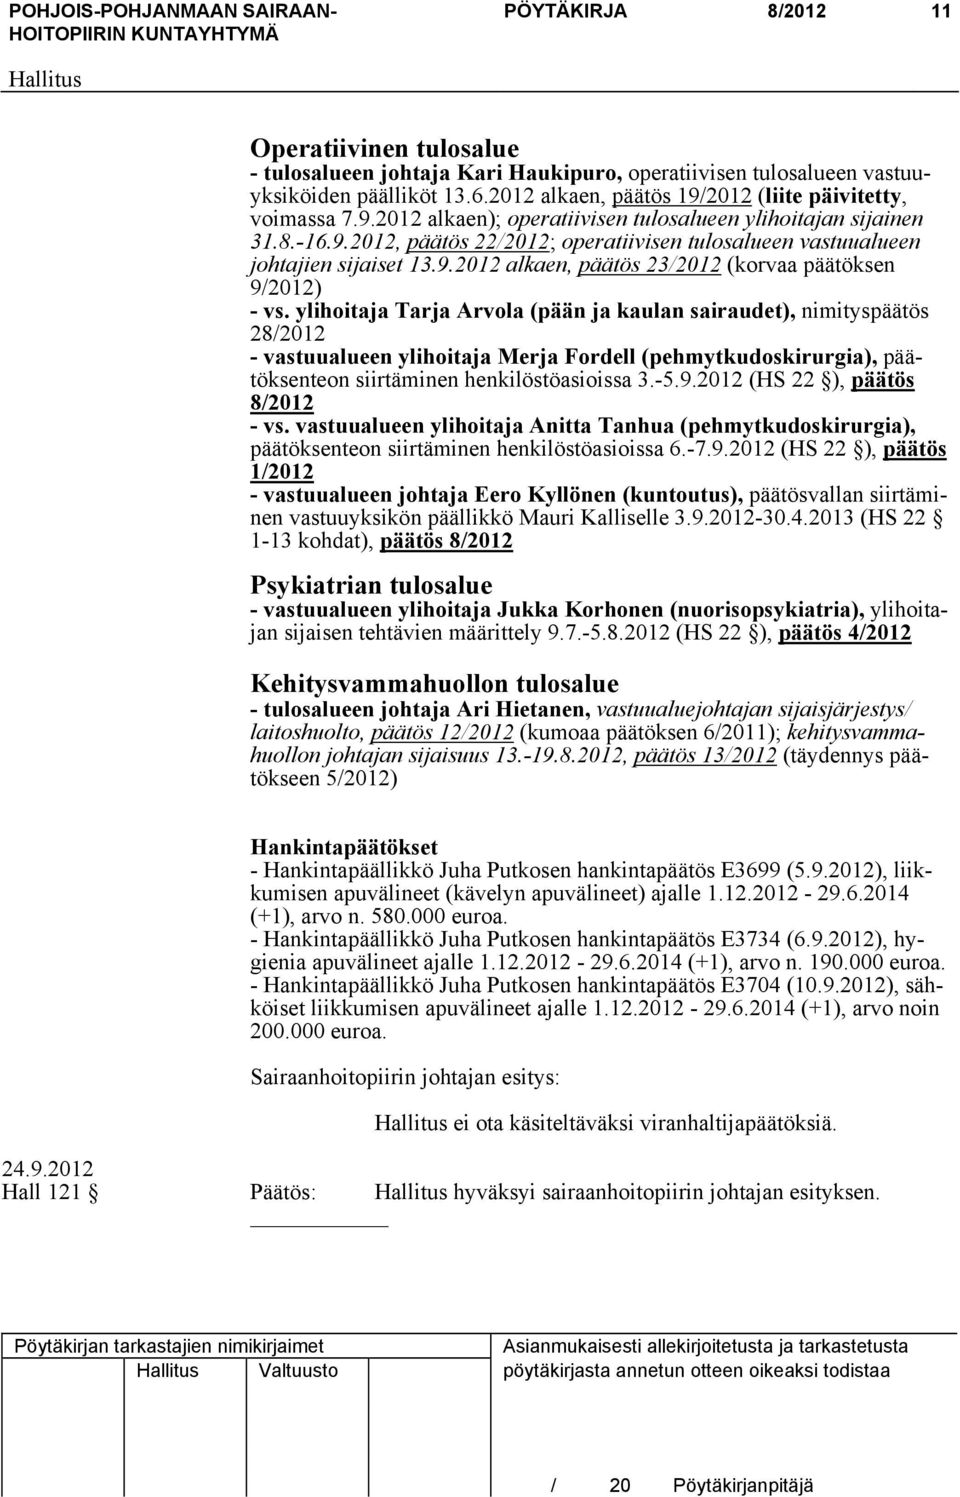 ylihoitaja Tarja Arvola (pään ja kaulan sairaudet), nimityspäätös 28/2012 - vastuualueen ylihoitaja Merja Fordell (pehmytkudoskirurgia), päätöksenteon siirtäminen henkilöstöasioissa 3.-5.9.